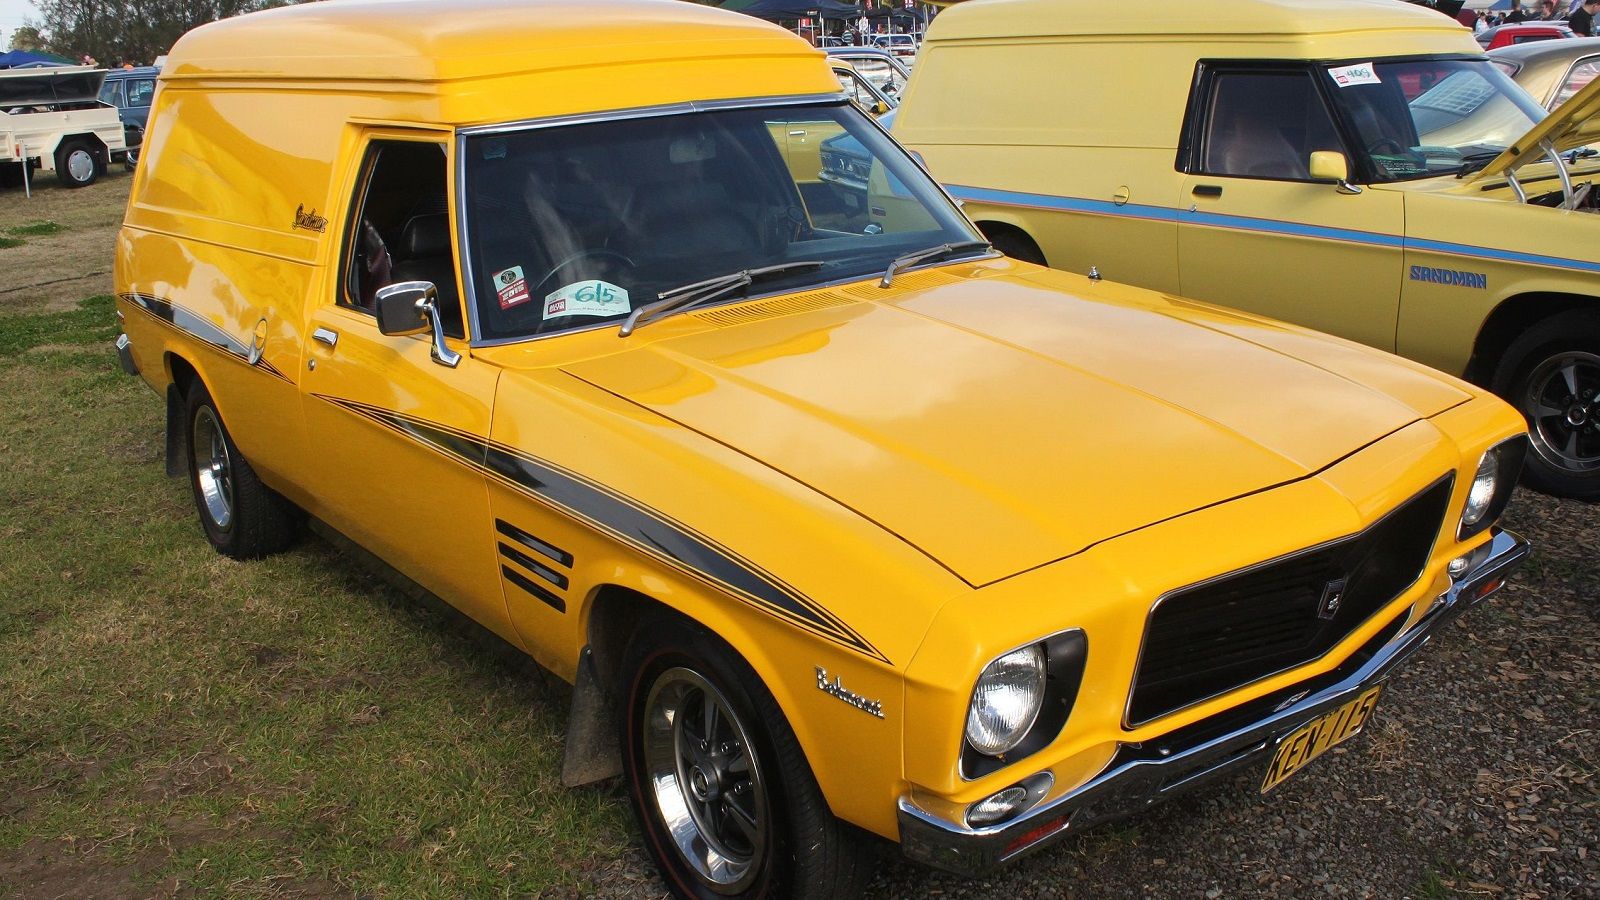 Van Holden Sandman tahun 1974 yang diparkir 